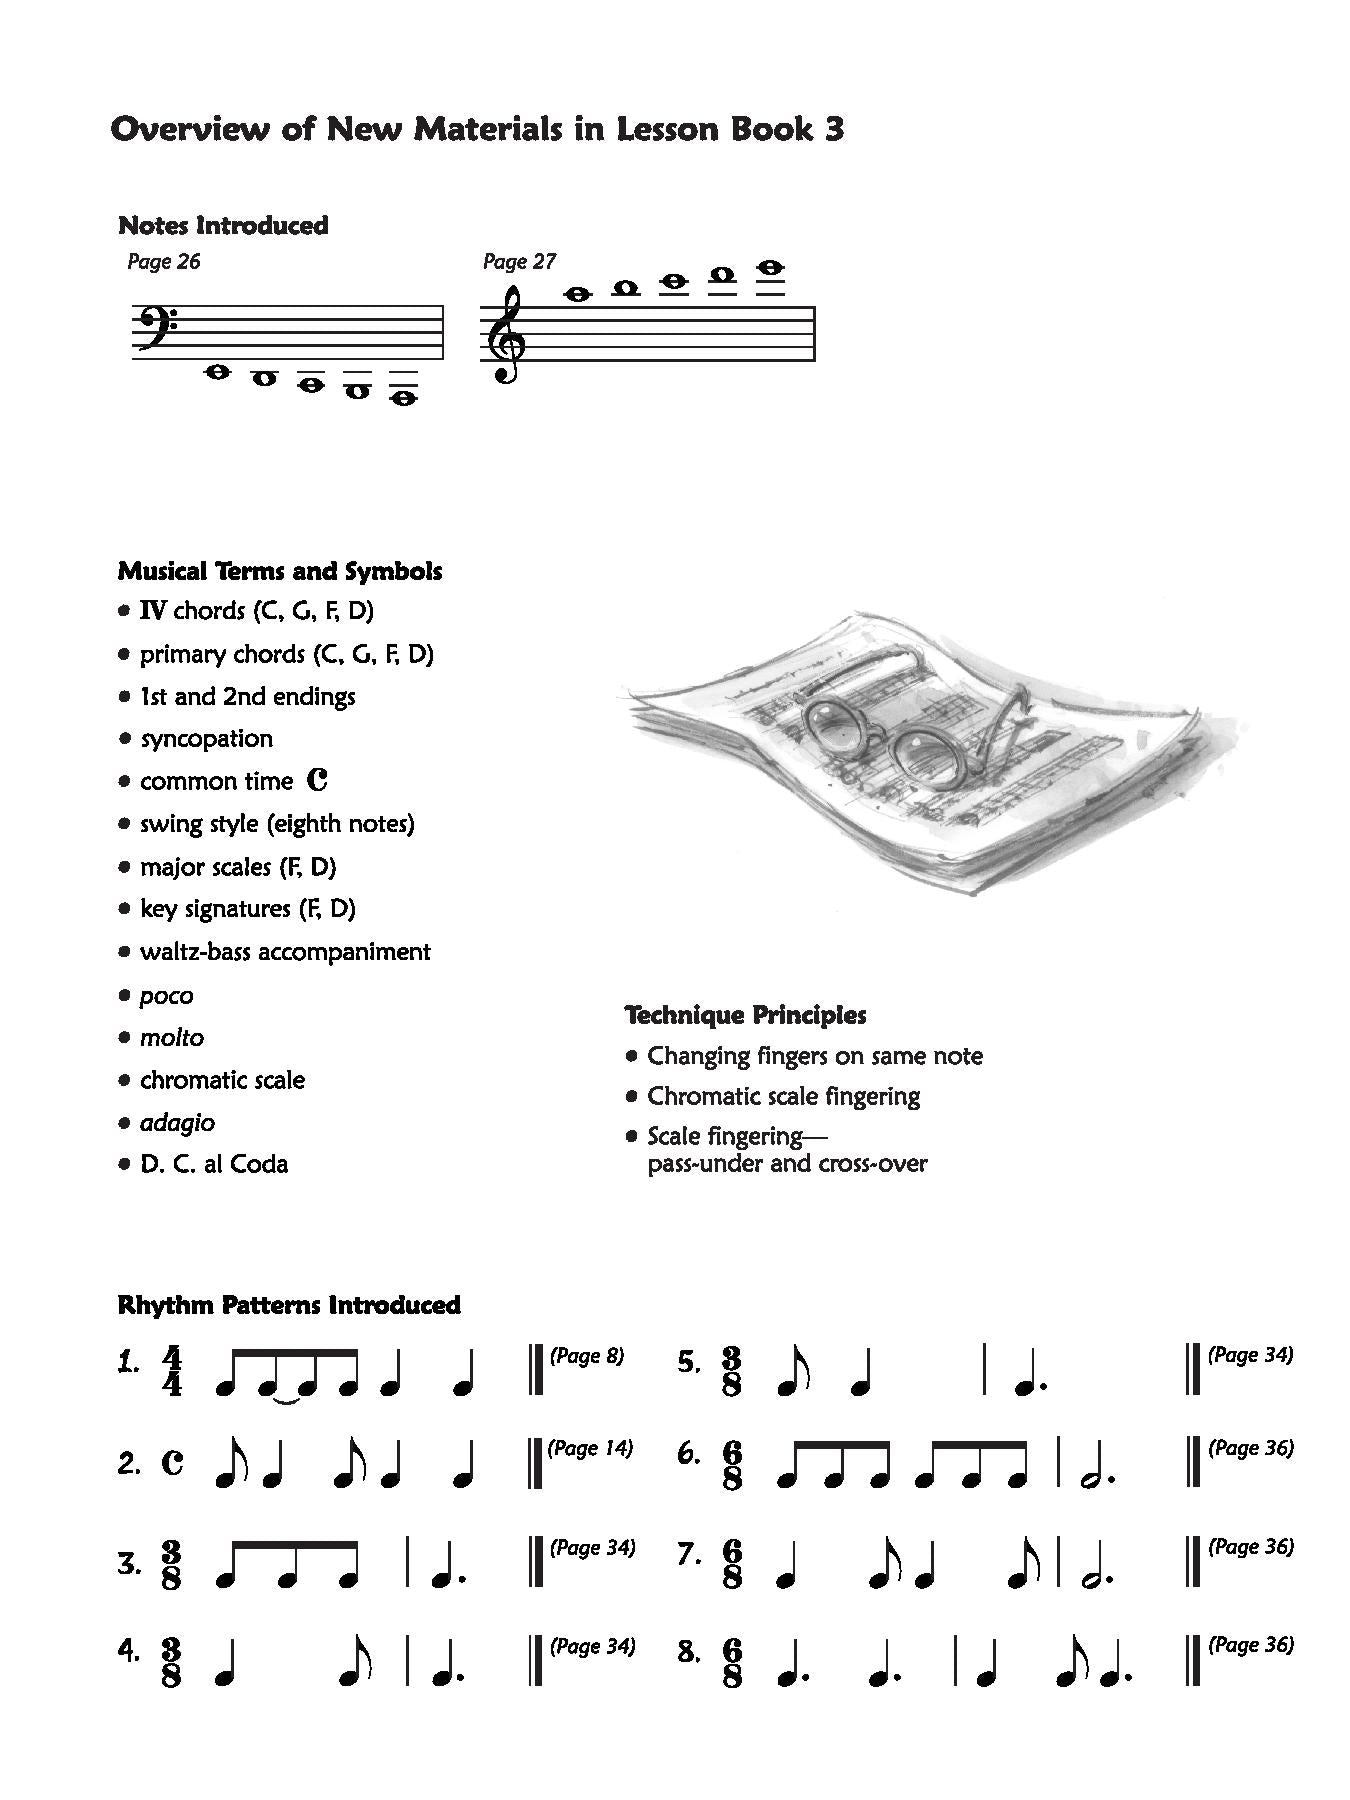 Alfred's Premier Piano Course, Lesson 3